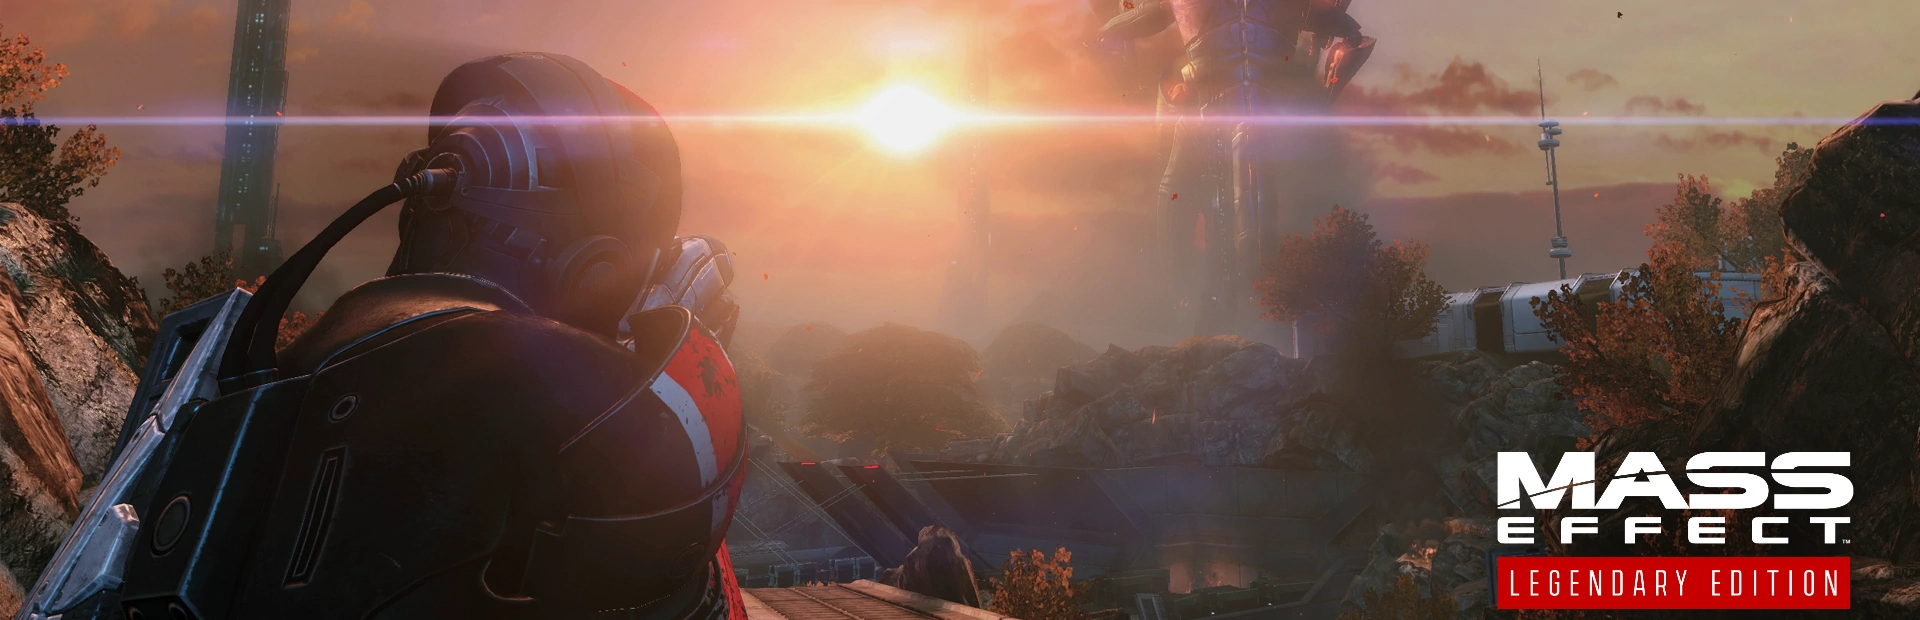 دانلود بازی Mass Effect Legendary Edition برای PC | گیمباتو